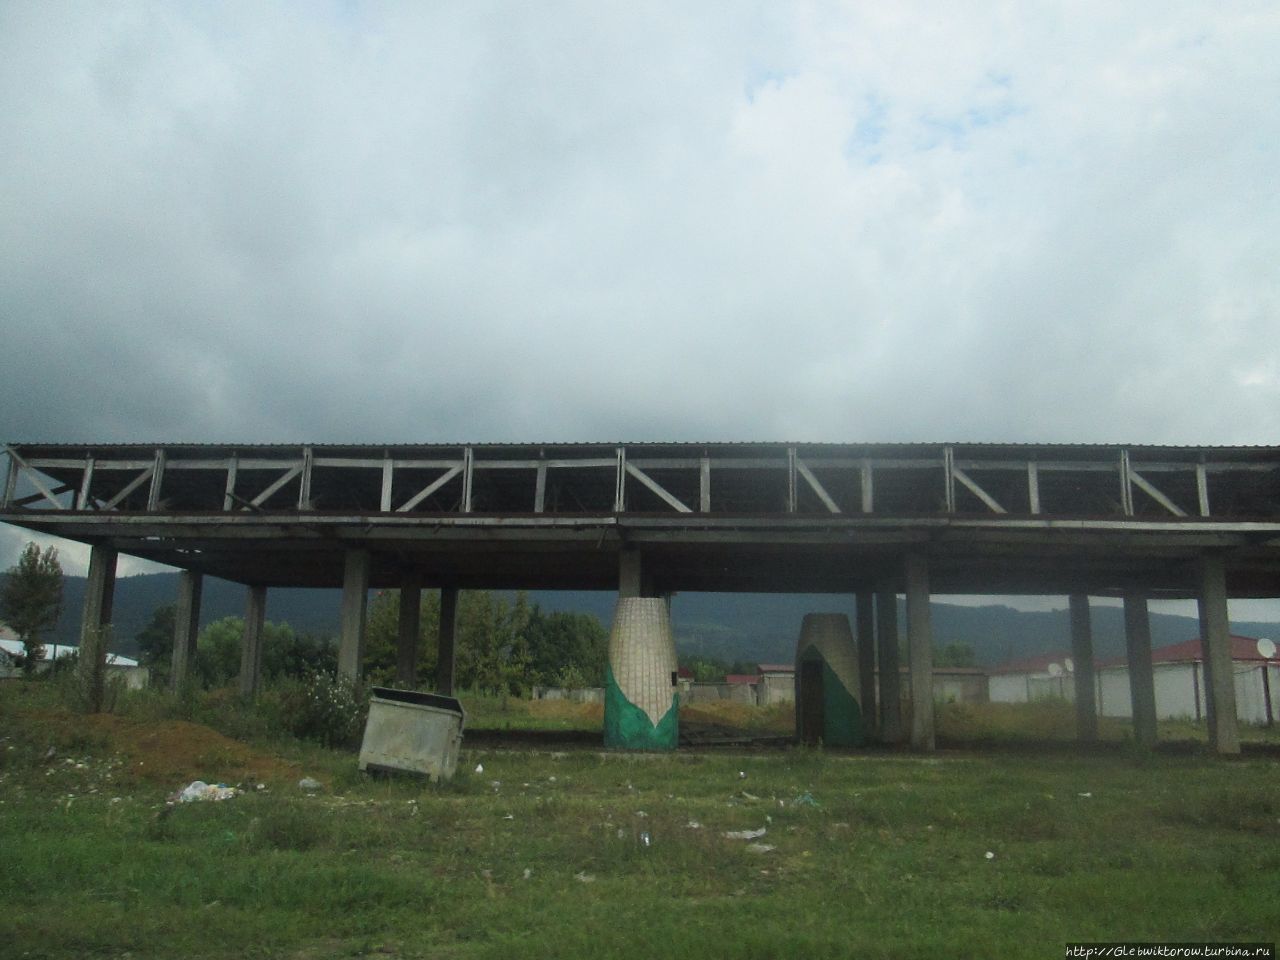 Поездка автостопом в Поти из Кутаиси Поти, Грузия